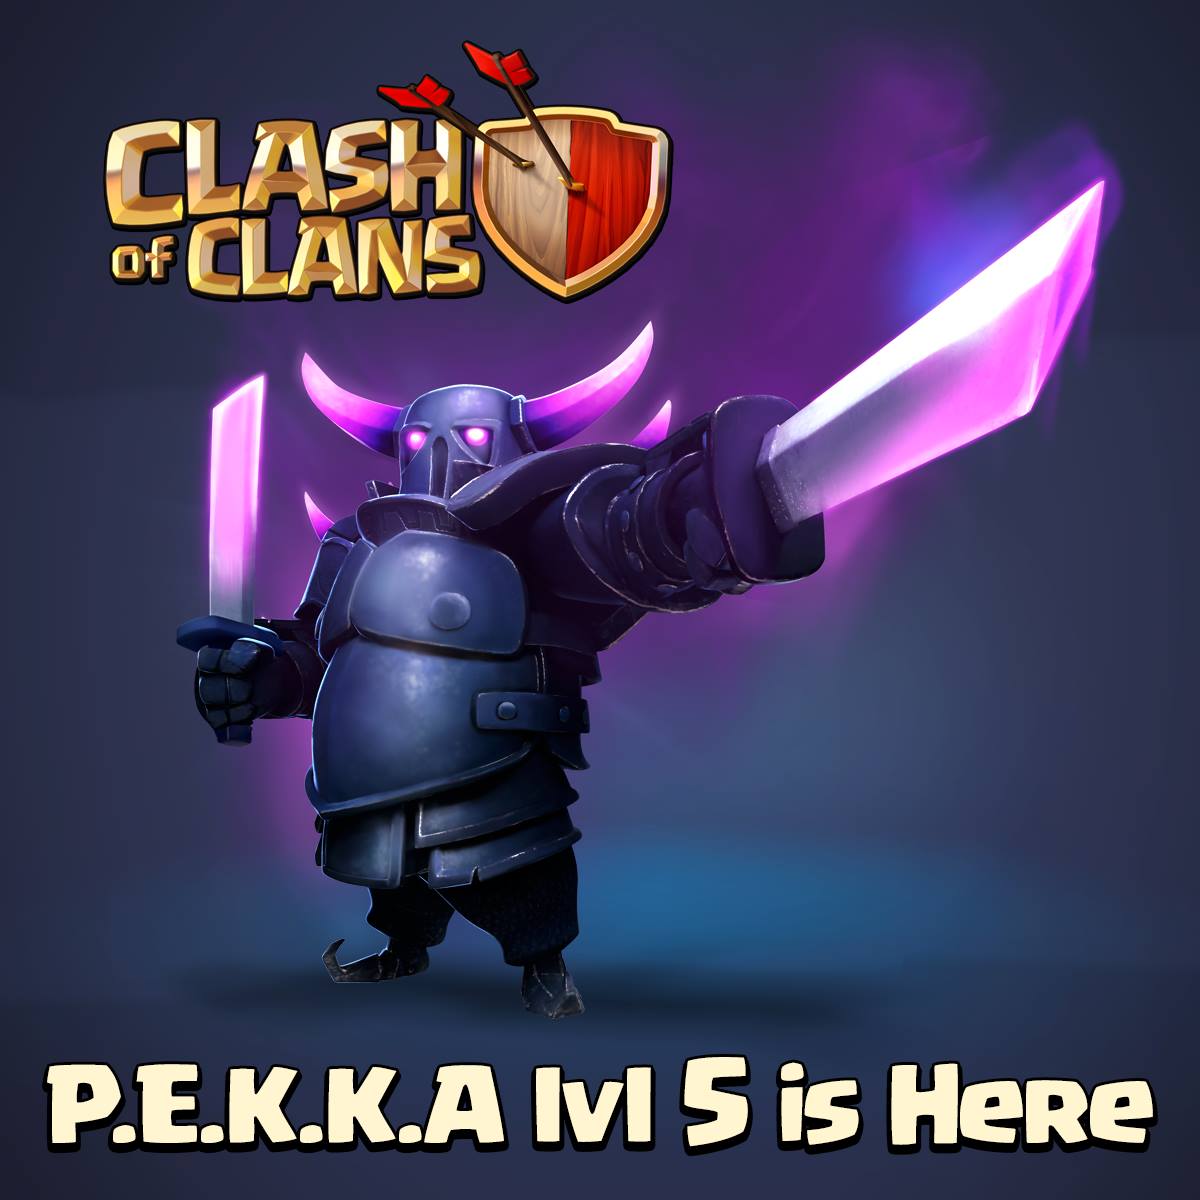 Clash of Clans. P.E.K.K.A